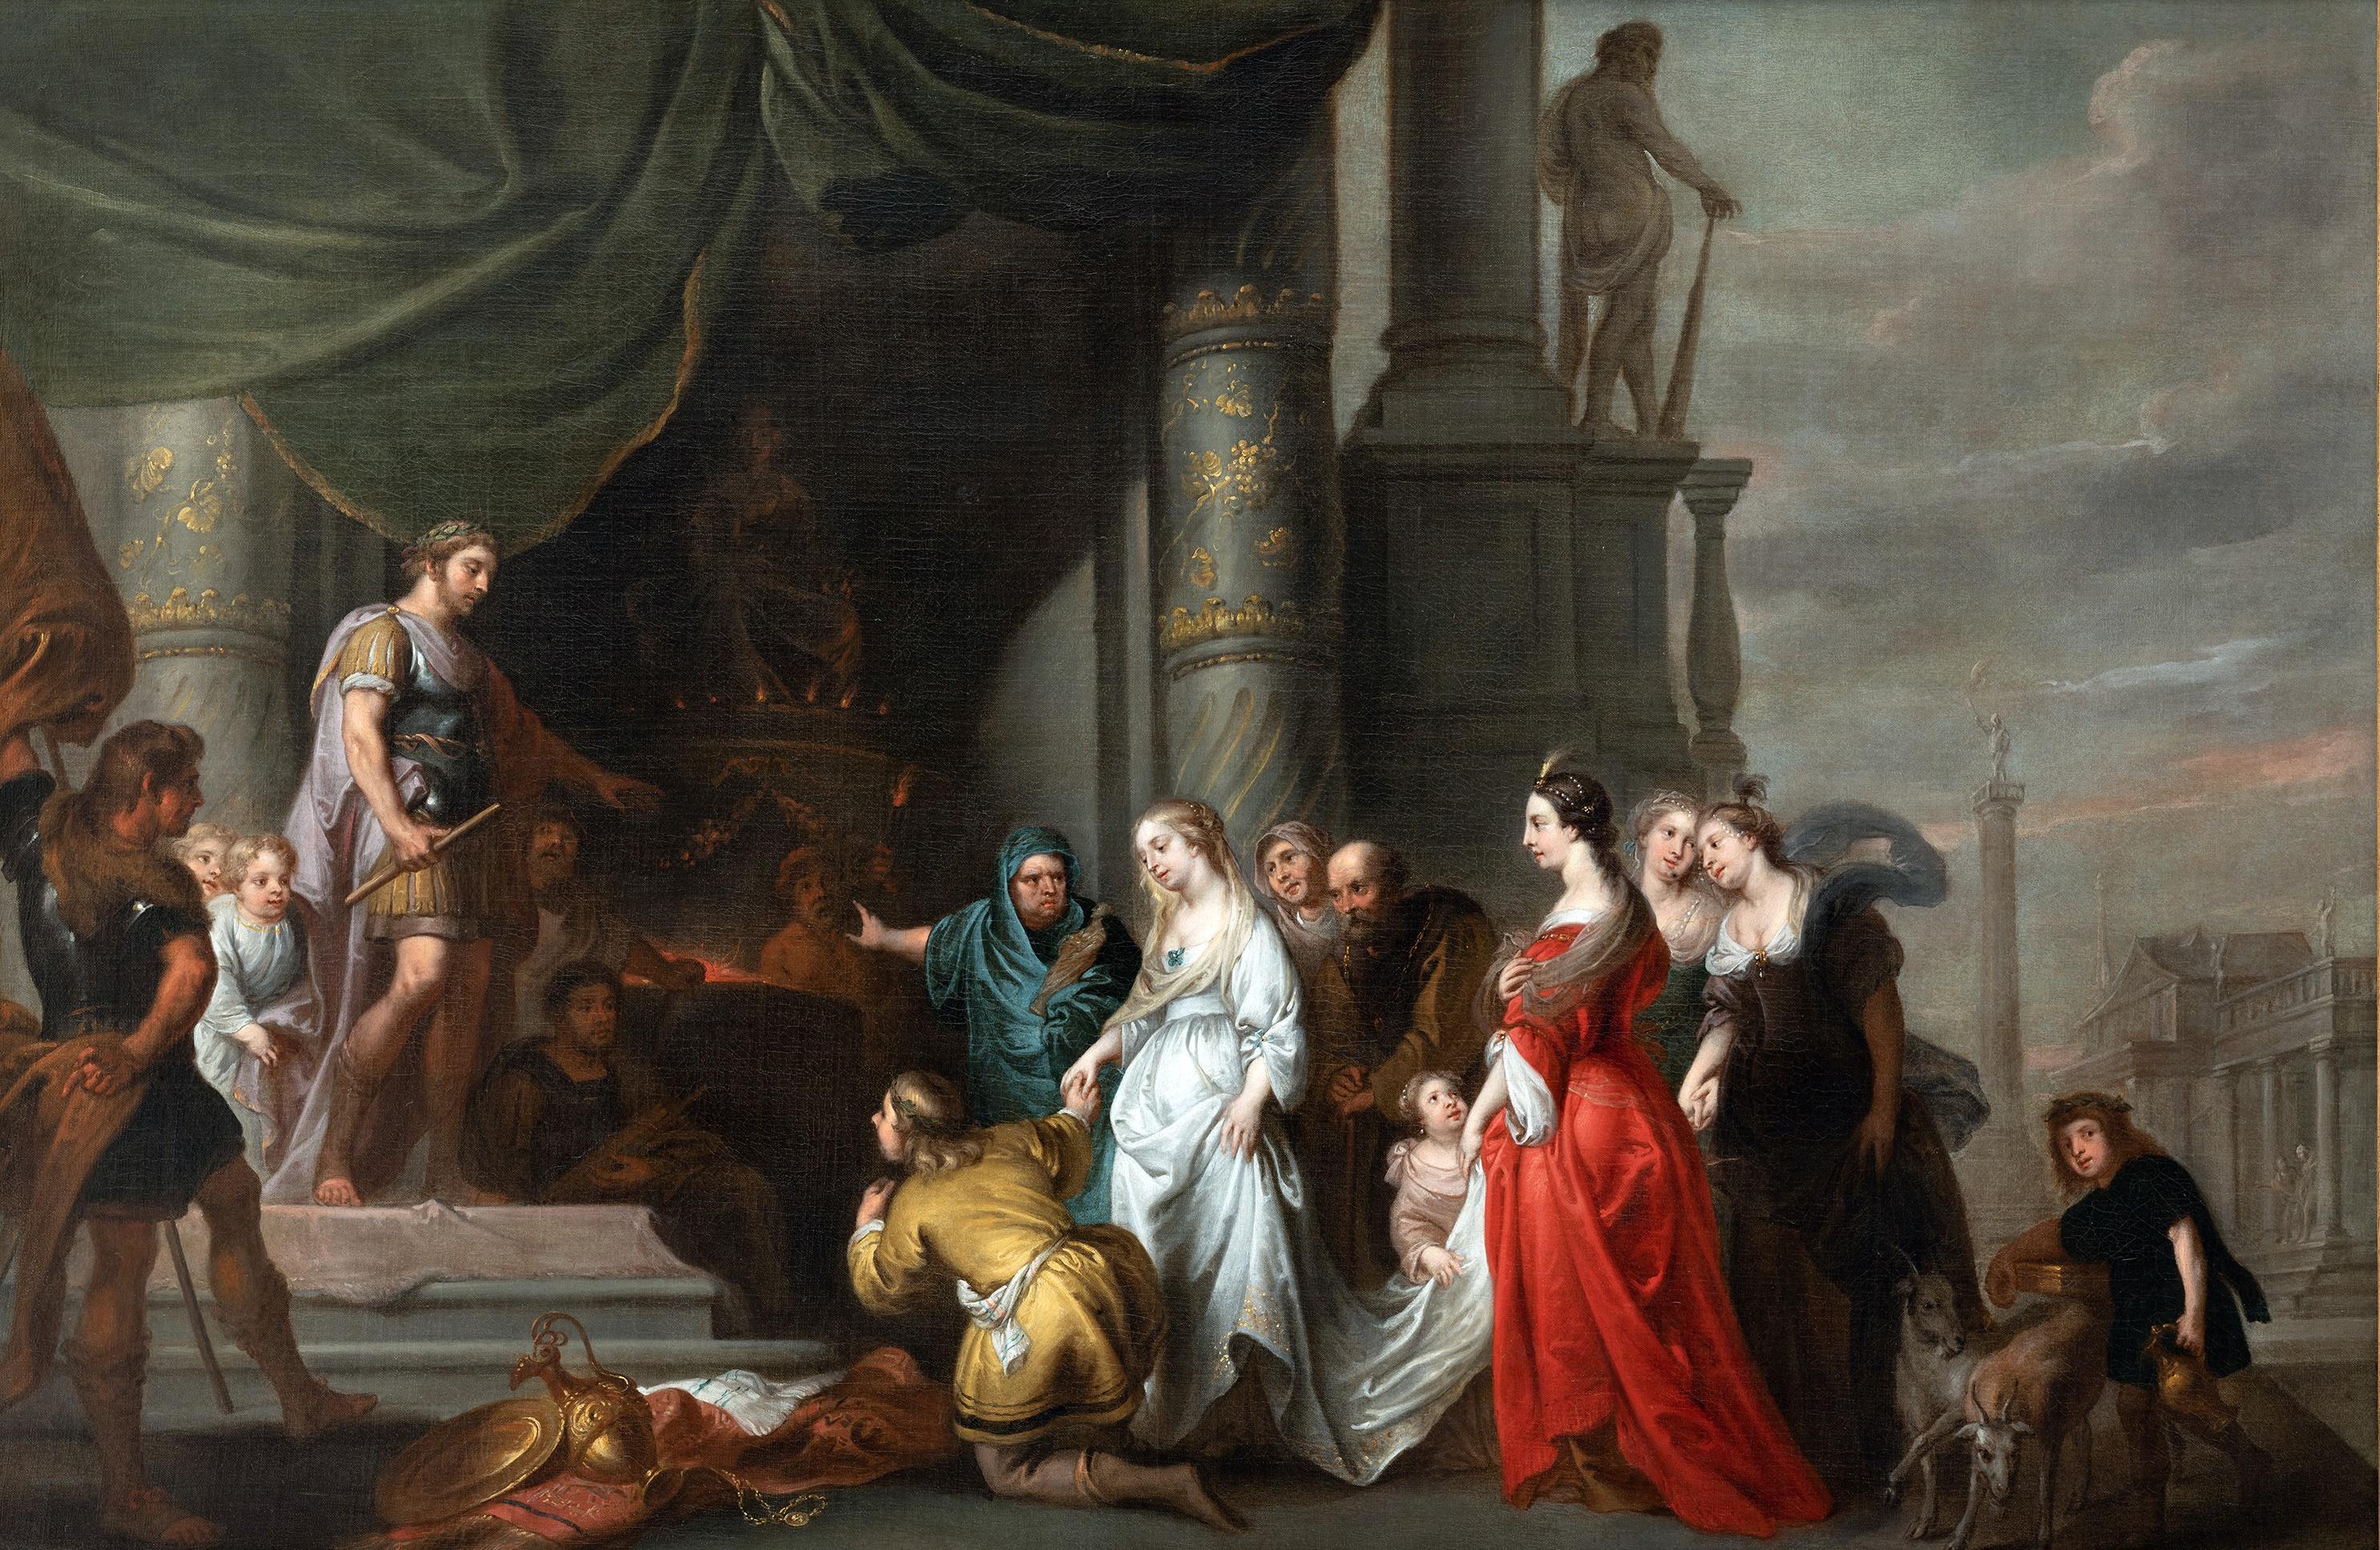 Kontinenz von Scipio, Erasmus Quellinus, Schule Rubens, Barockkunst, Alter Meister